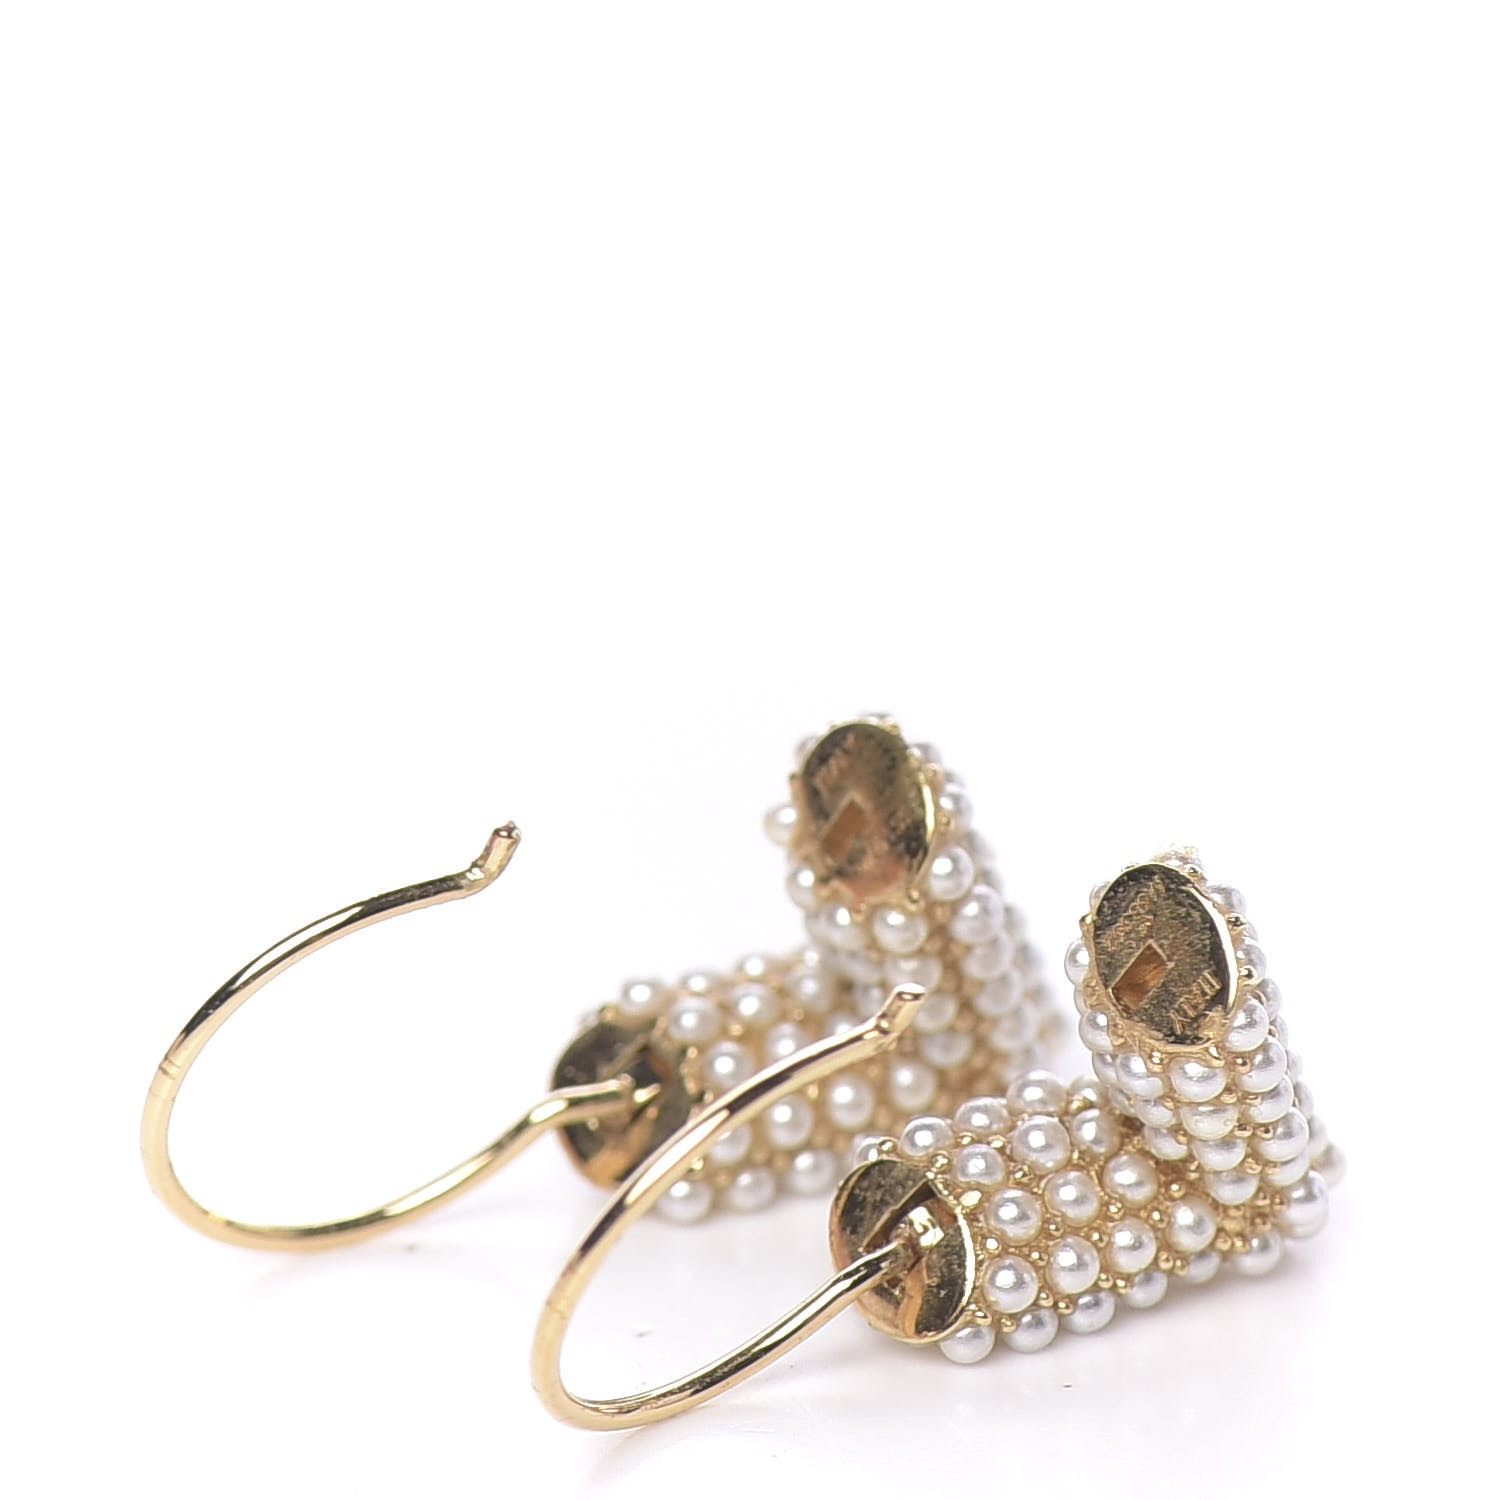 Buy Louis Vuitton Essential V Hoops Earrings at